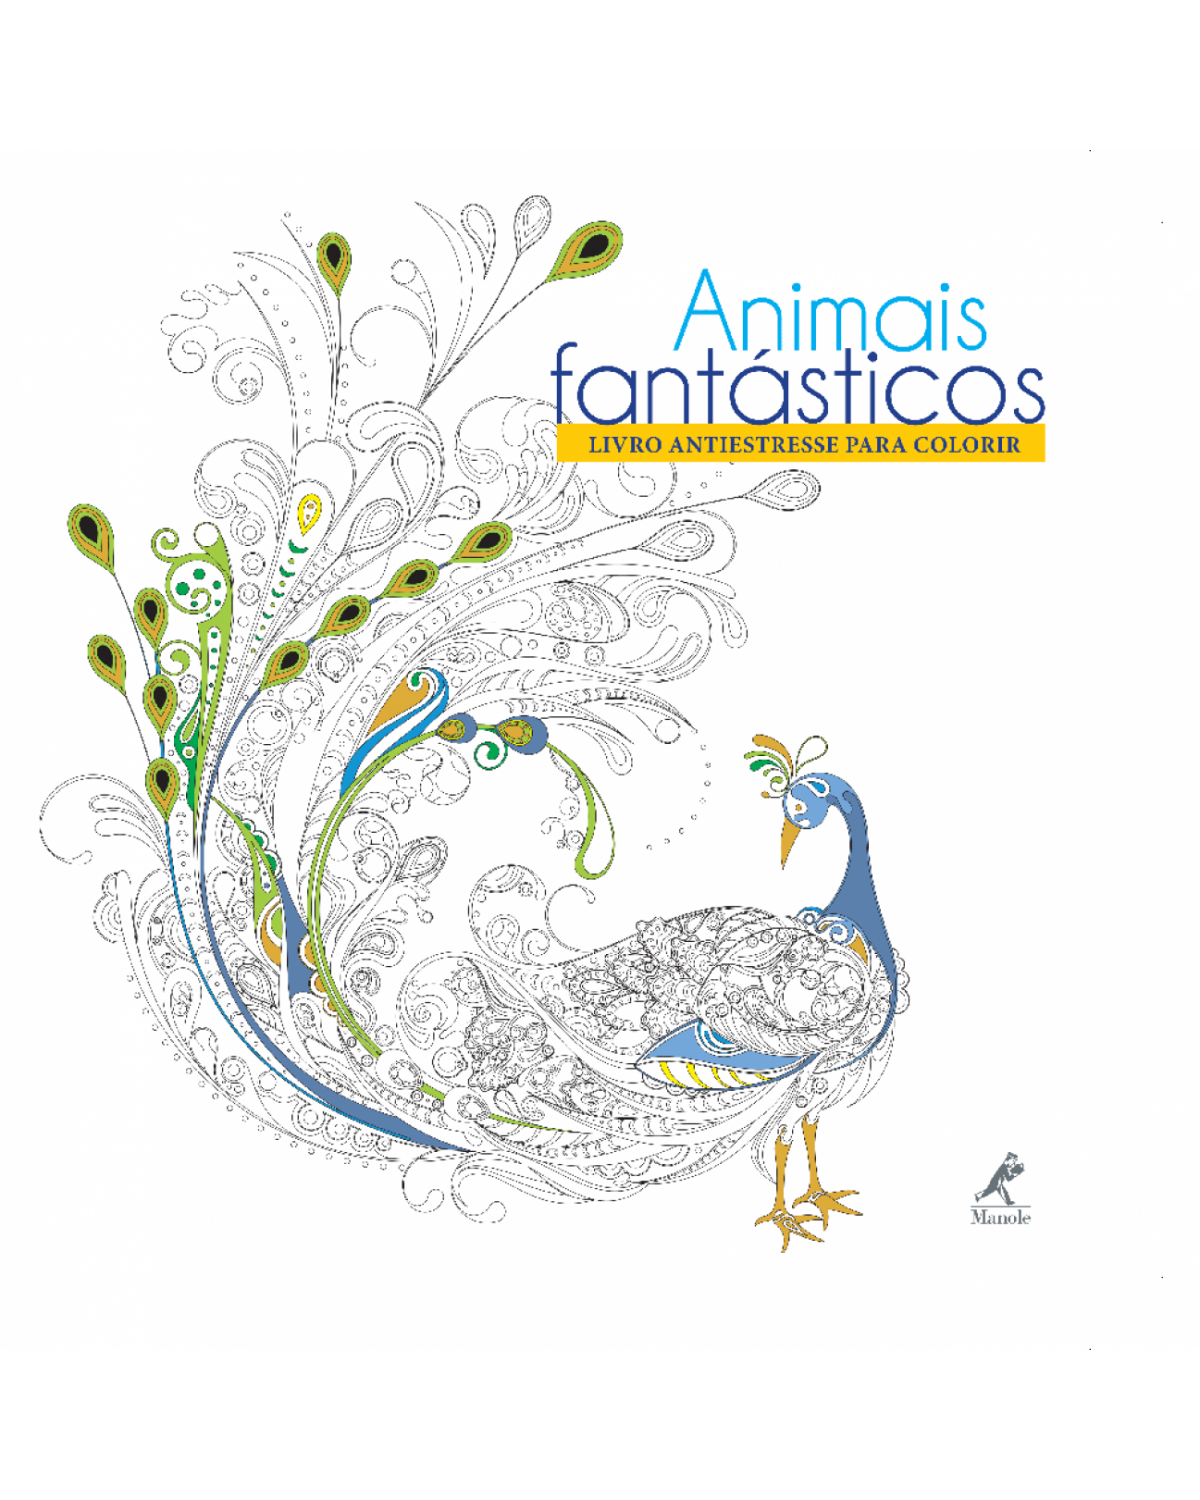 Animais fantásticos - Livro antiestresse para colorir - 1ª Edição | 2016